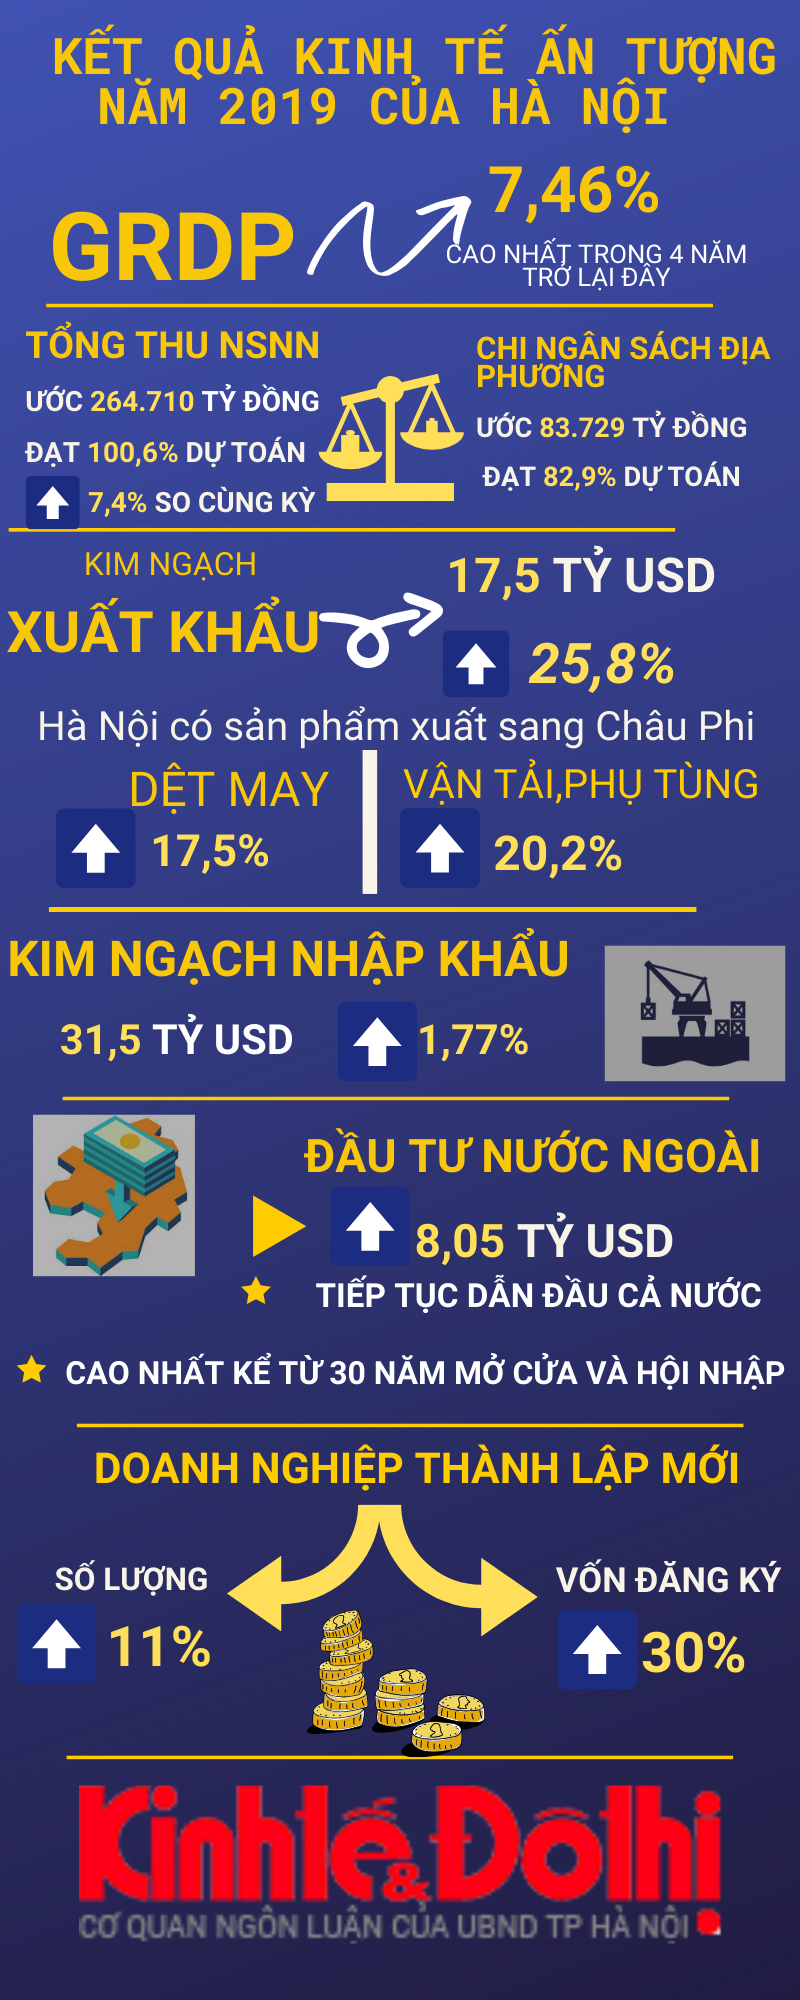 Kinh tế - xã hội Hà Nội năm 2019: GRDP tăng 7,46% - cao nhất trong 4 năm trở lại đây - Ảnh 2